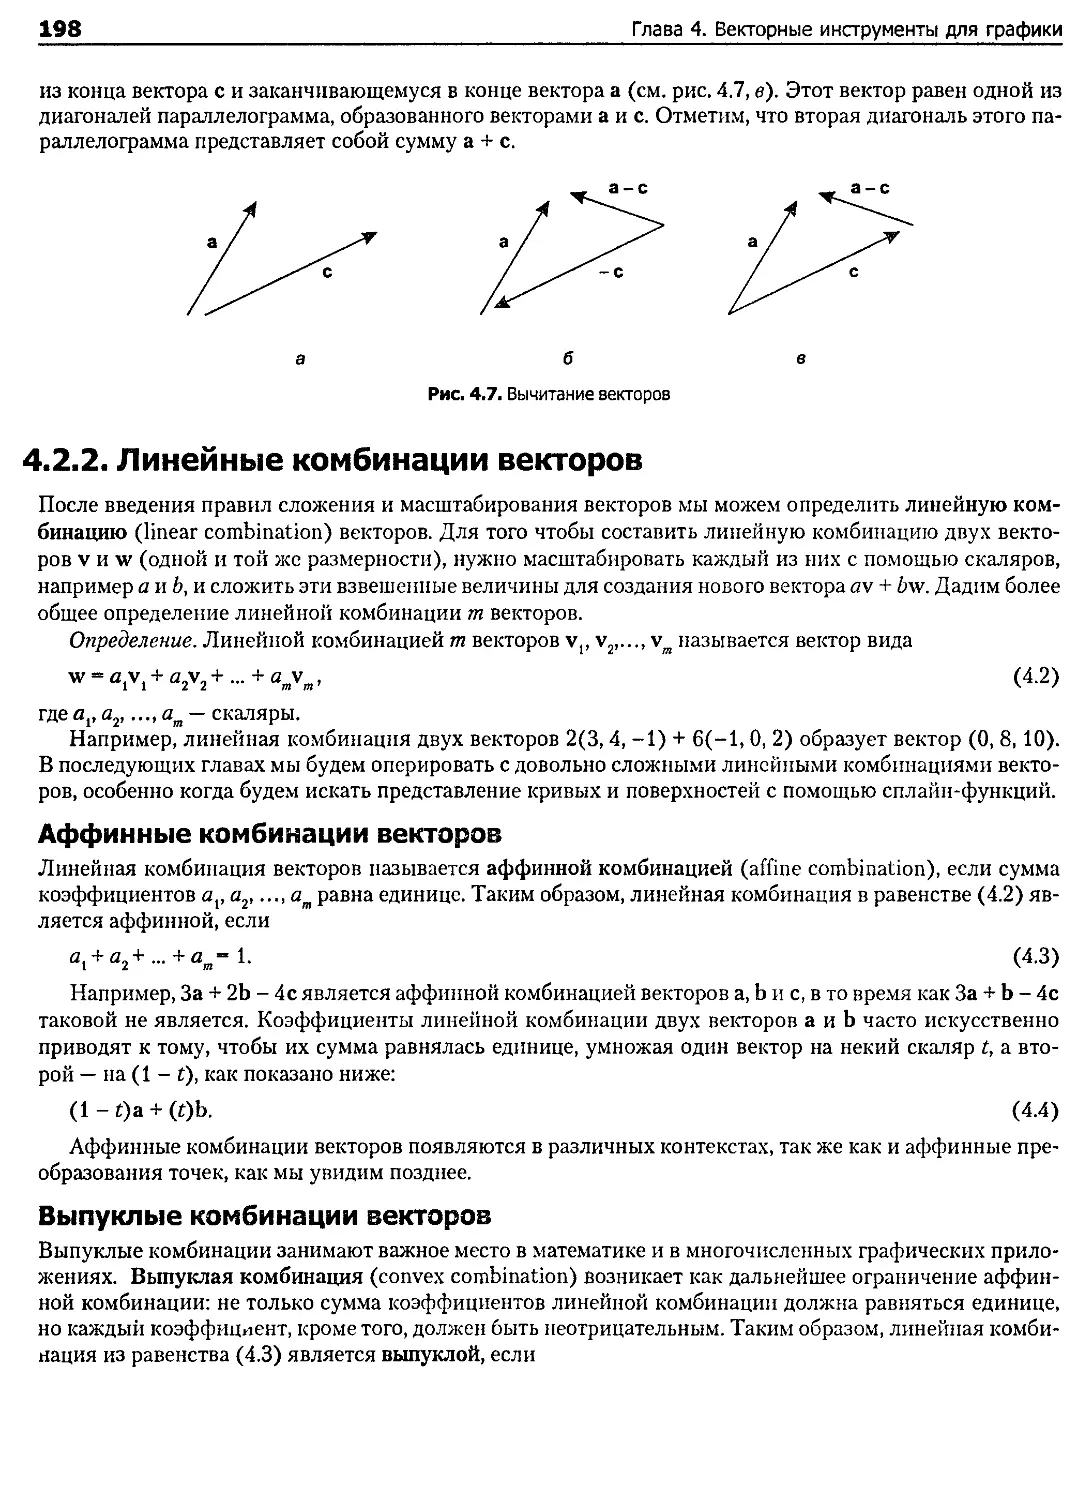 4.2.2. Линейные комбинации векторов